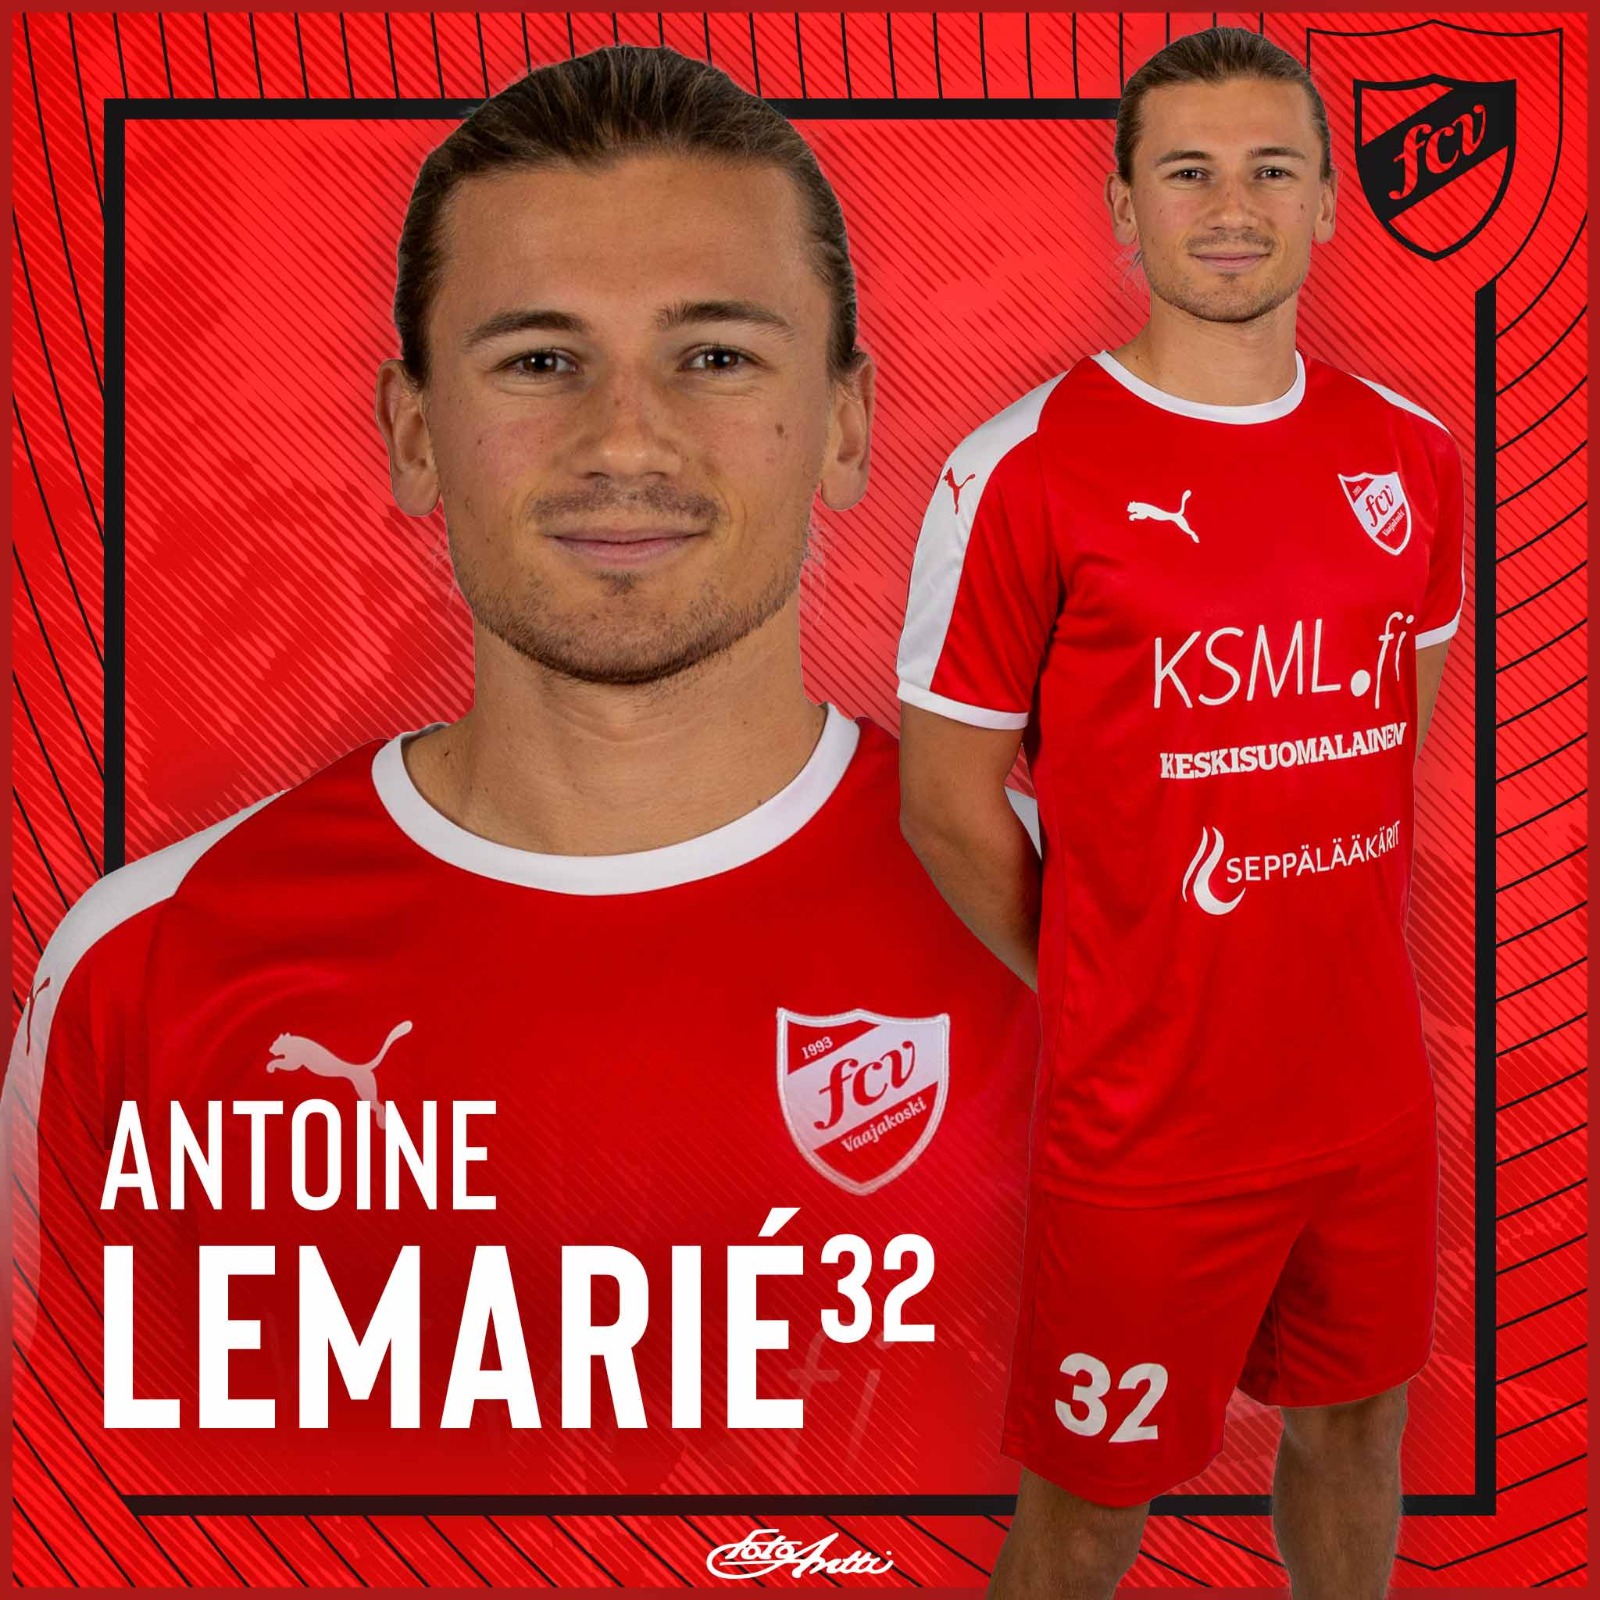 Antoine Lemarie